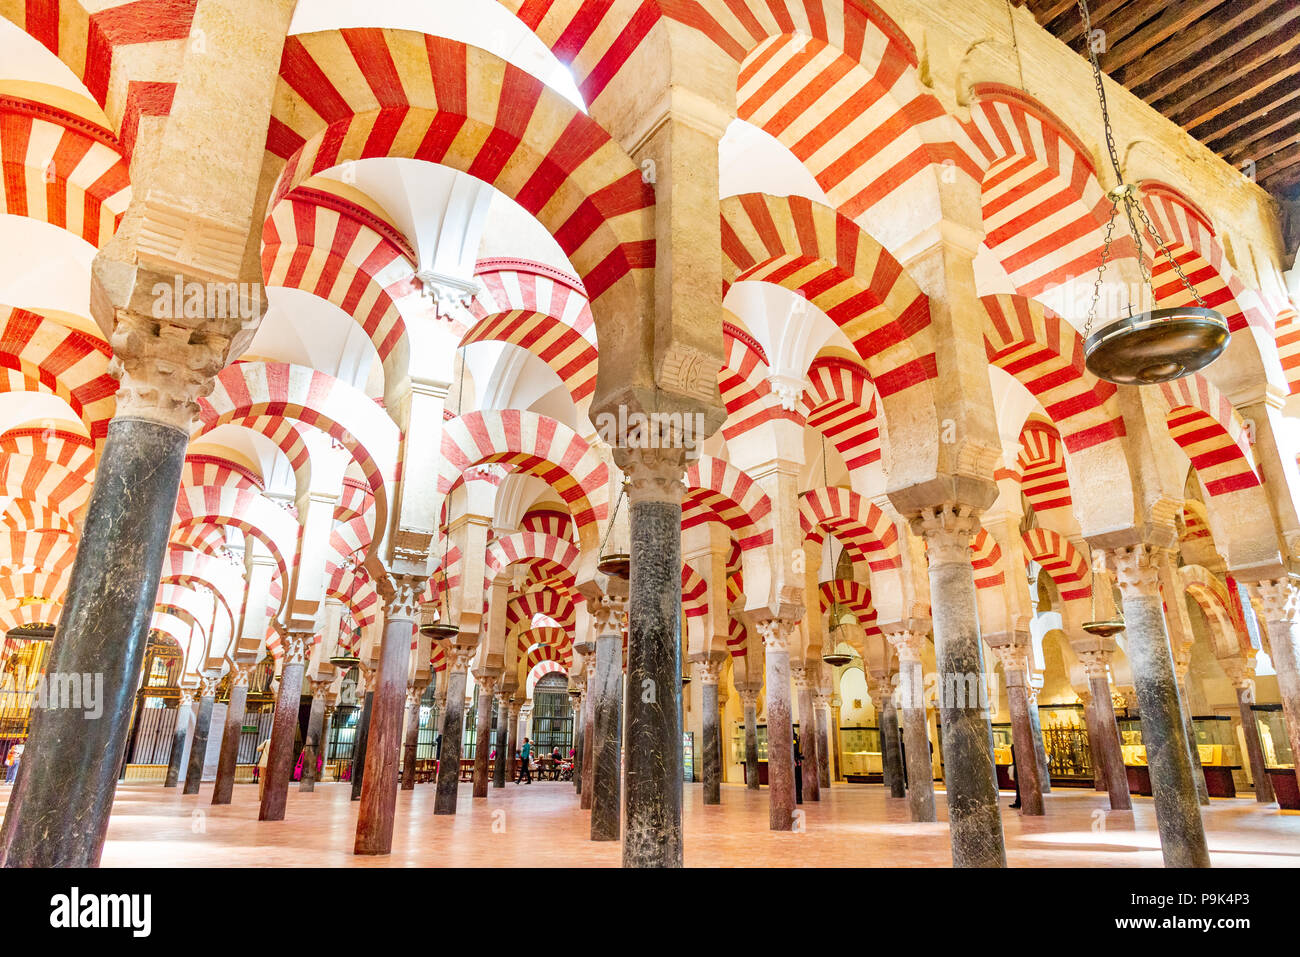 Colonne di Moresco nella moschea-cattedrale di Cordoba, Andalusia, Spagna Foto Stock